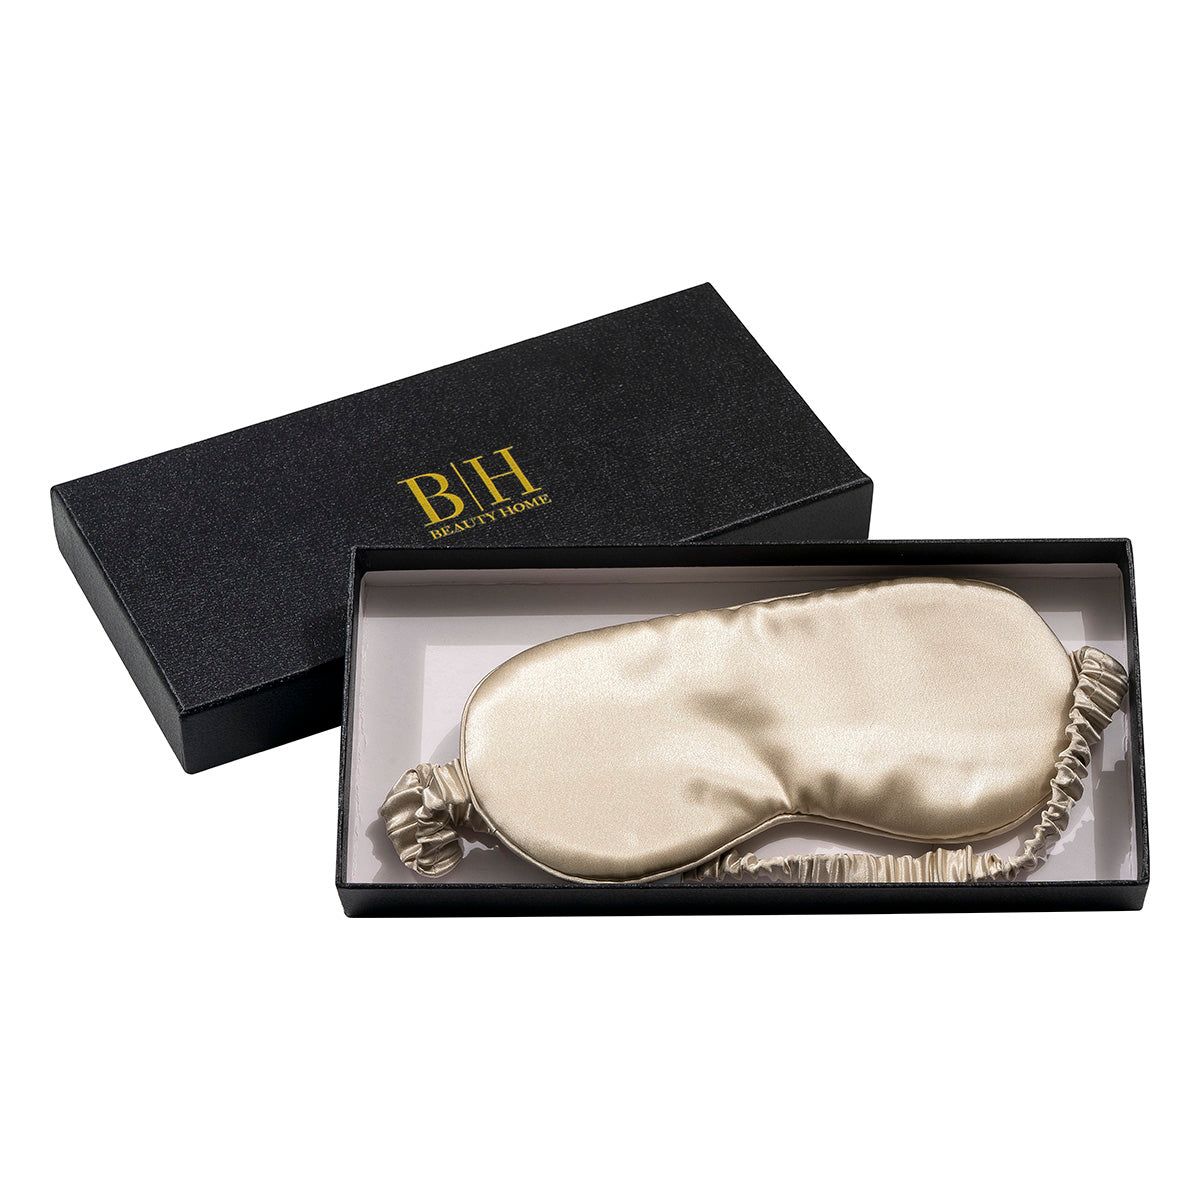 Μεταξωτή μάσκα ύπνου σε κουτί δώρου Art 12042 Λευκό Beauty Home από την εταιρεία Beauty Home